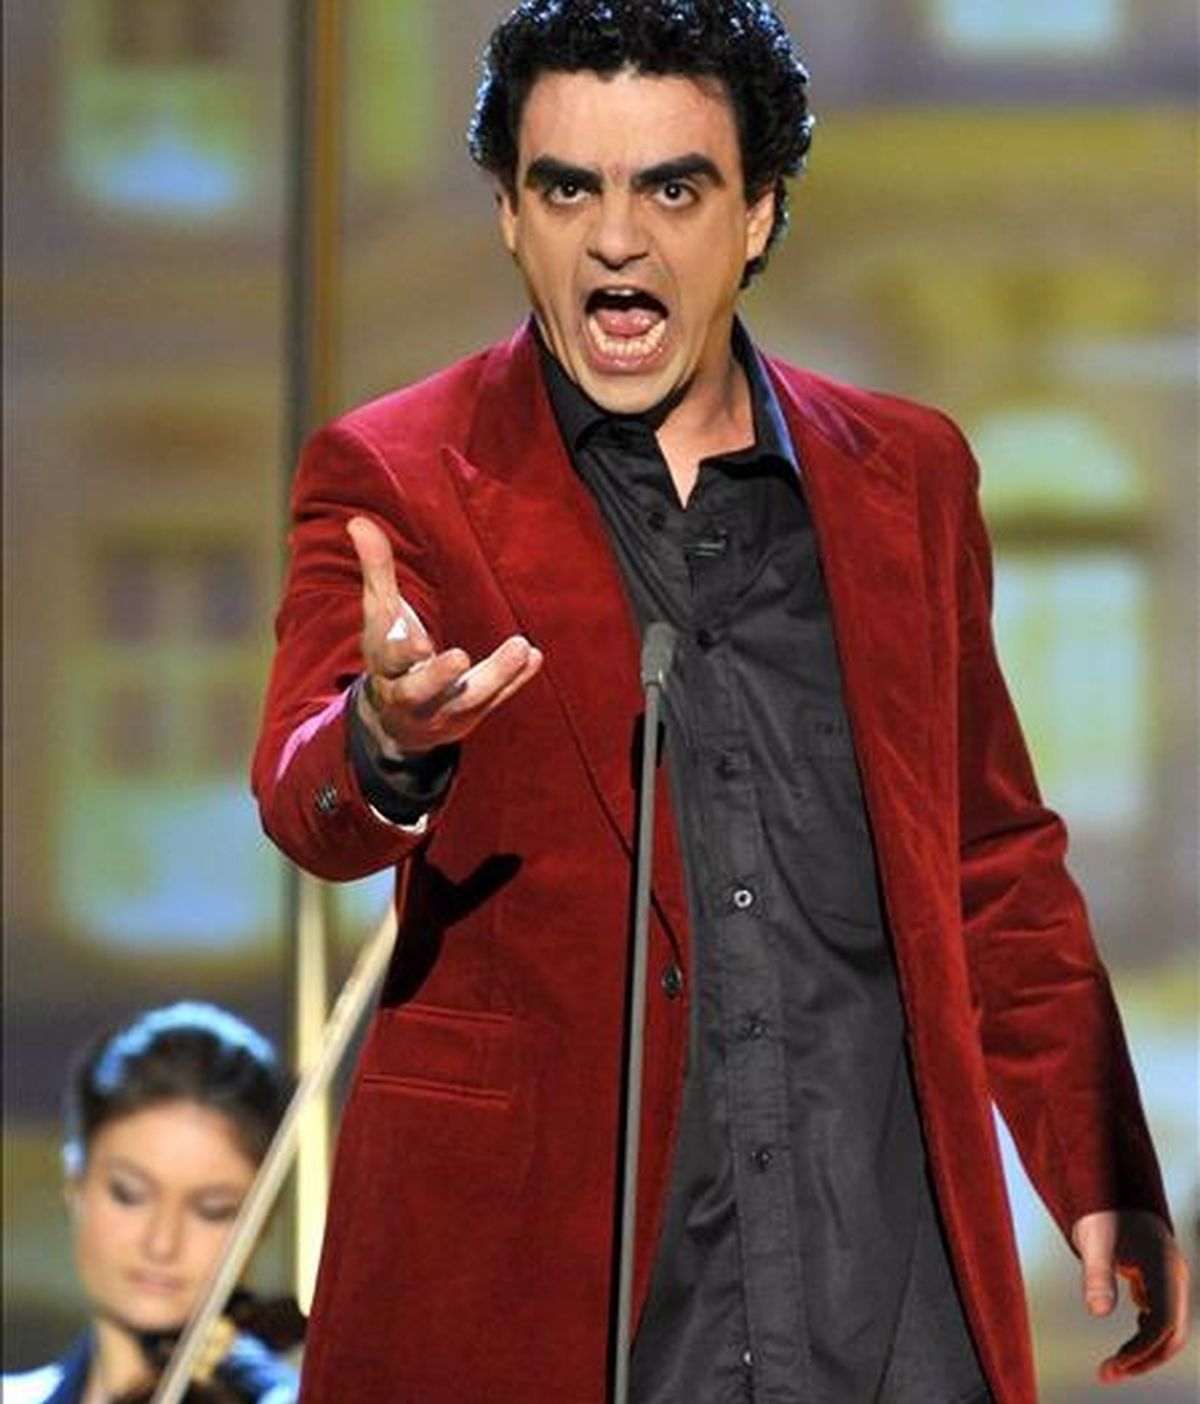 El tenor mexicano Rolando Villazón durante su actuación en el programa de la televisión alemana "Wetten Dass...?", grabado en el Olympiahalle de Múnich (Alemania), el 21 de marzo pasado. EFE/Archivo